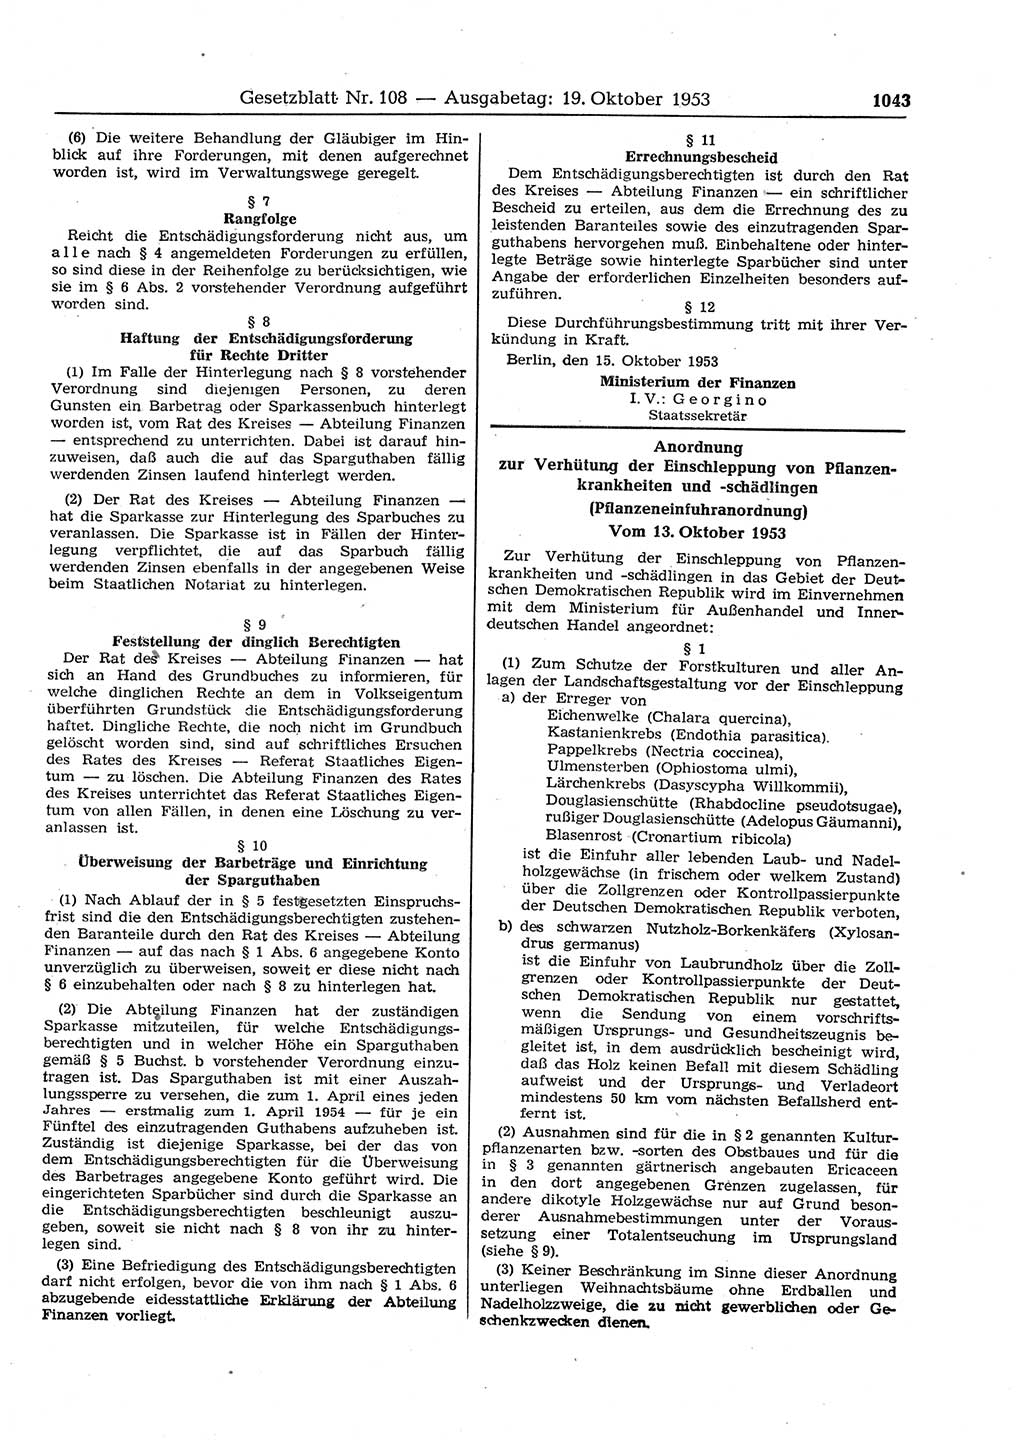 Gesetzblatt (GBl.) der Deutschen Demokratischen Republik (DDR) 1953, Seite 1043 (GBl. DDR 1953, S. 1043)